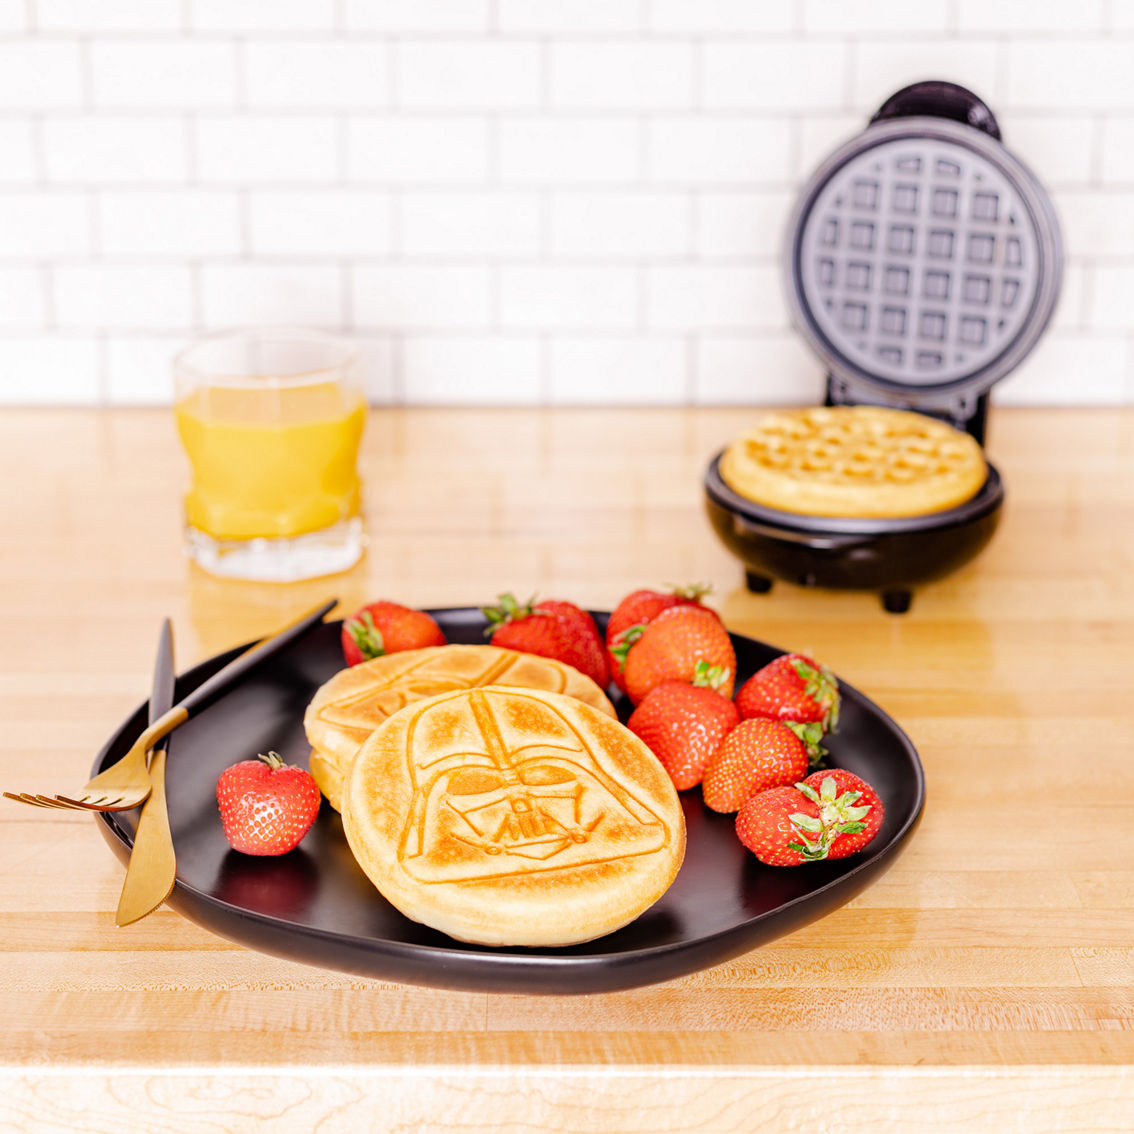 Uncanny Brands Star Wars Darth Vader Mini Waffle Maker - Image 4 of 7